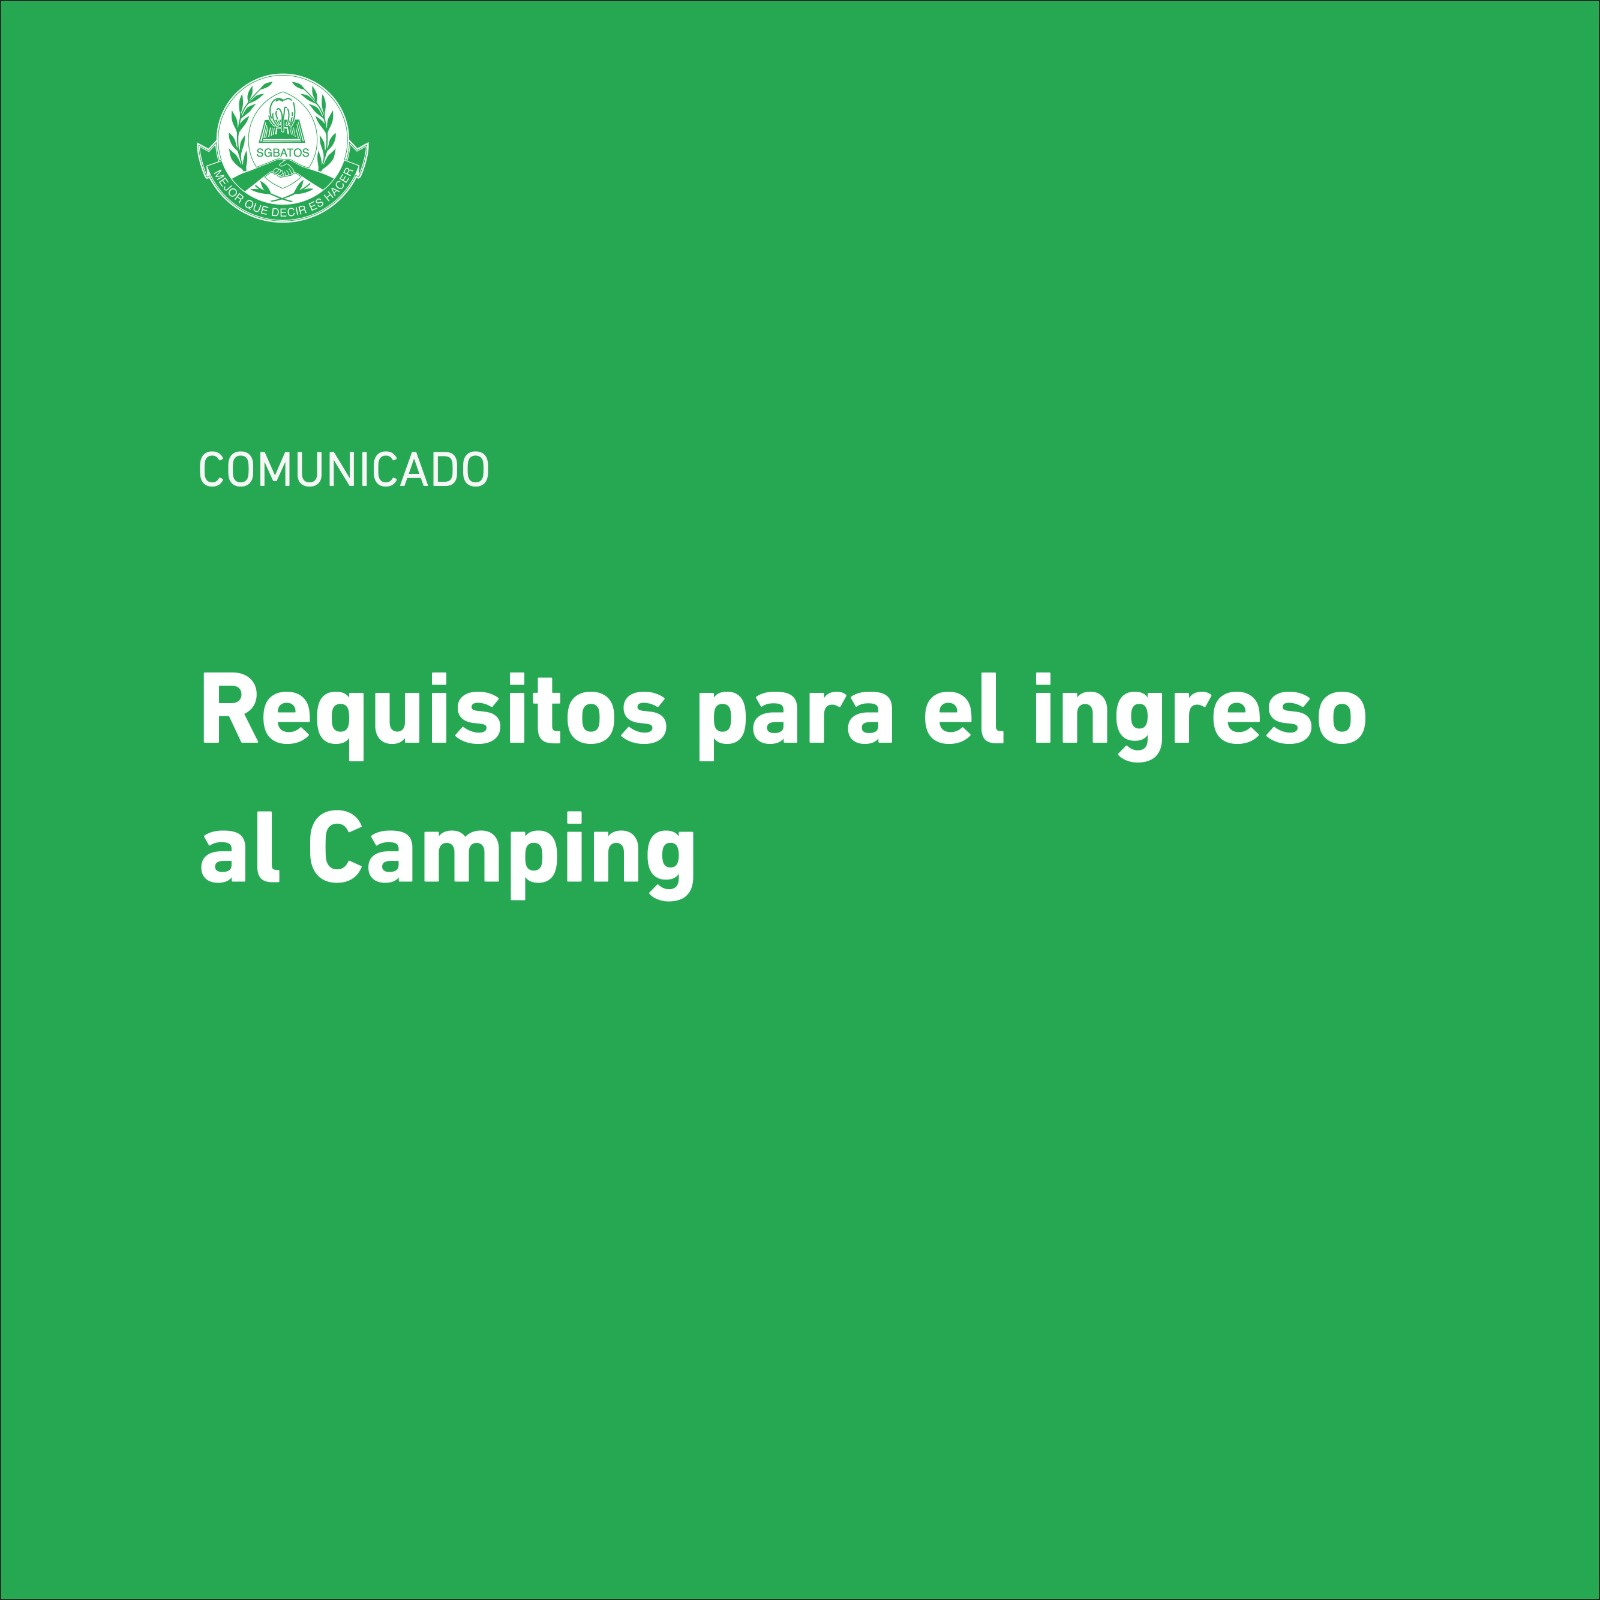 Requisitos para el ingreso al Camping